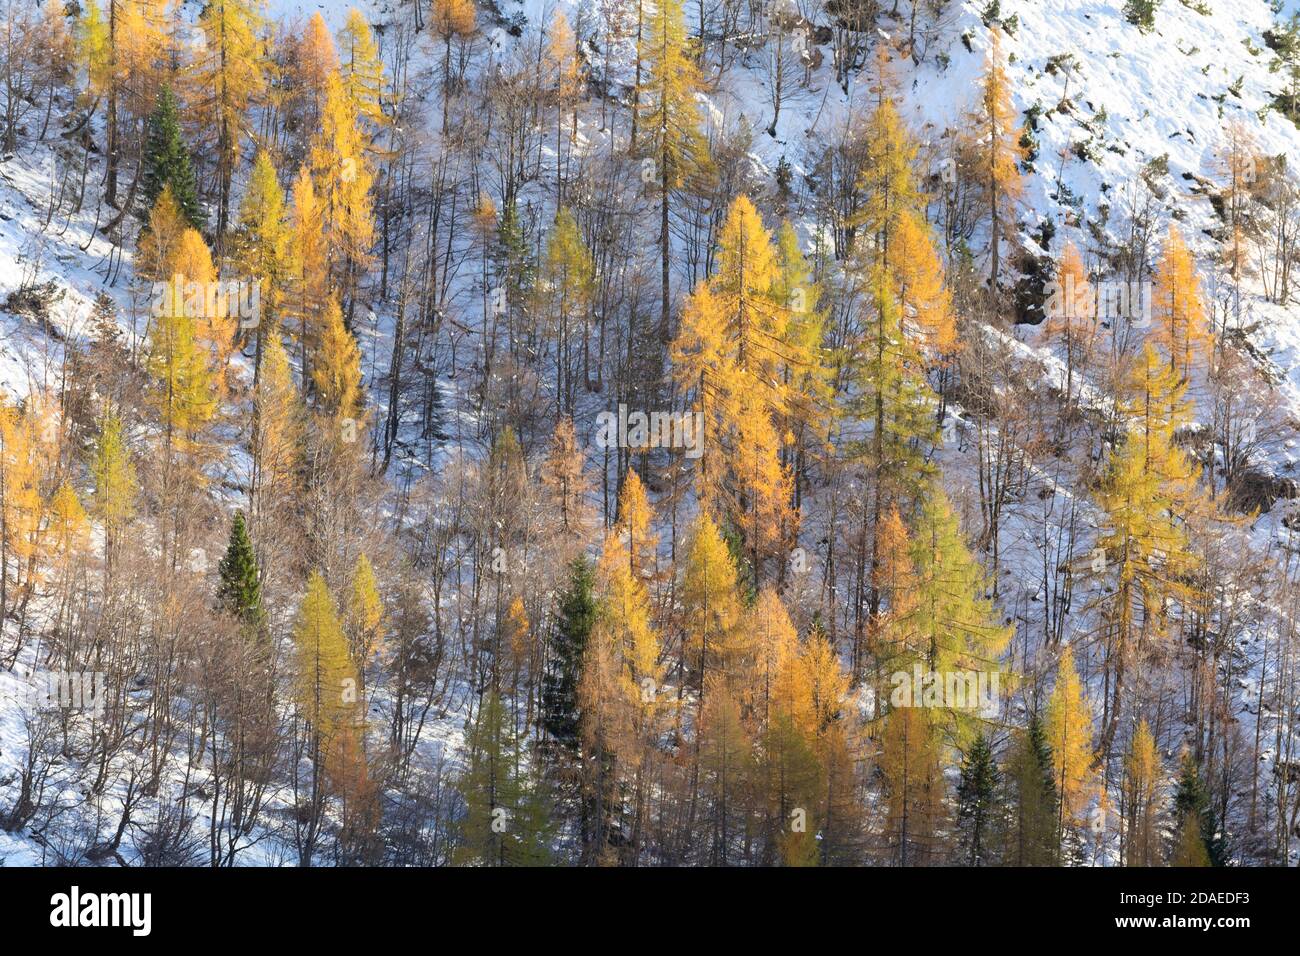 Larch forest in autumn, Corpassa valley, Civetta group, Agordino, Dolomites, Belluno, Veneto, Italy, Europe Stock Photo